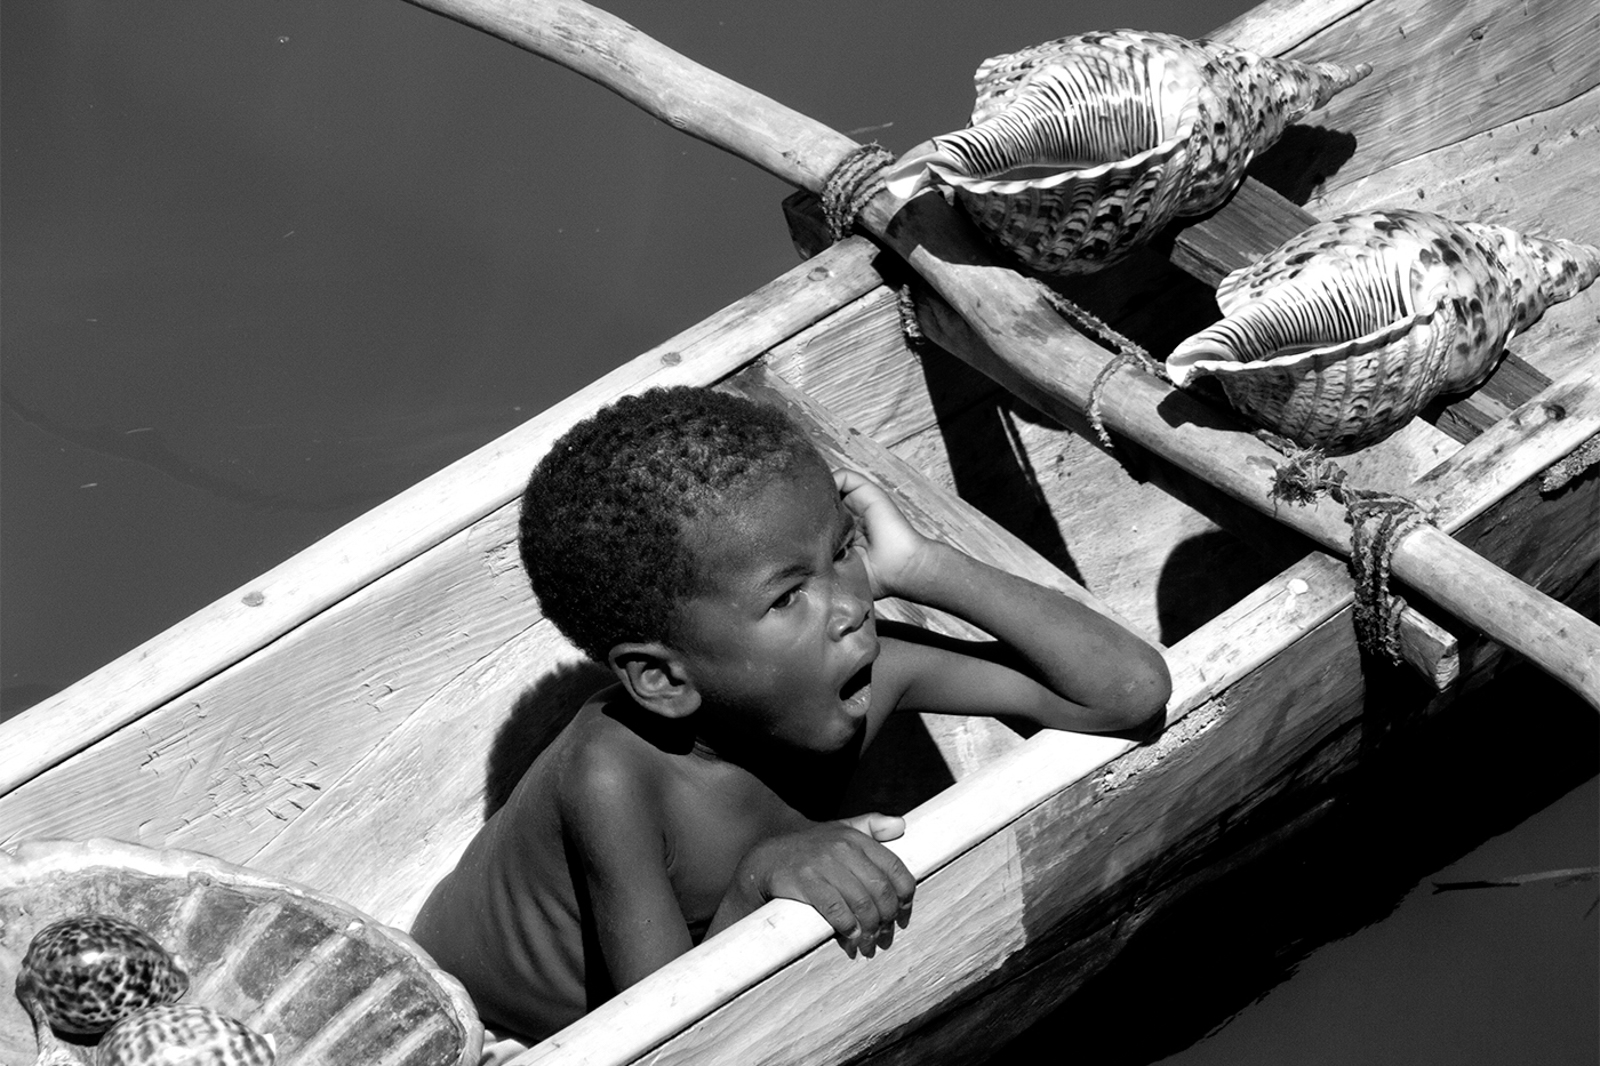 Boy in Canoe, by Kevin Simpson